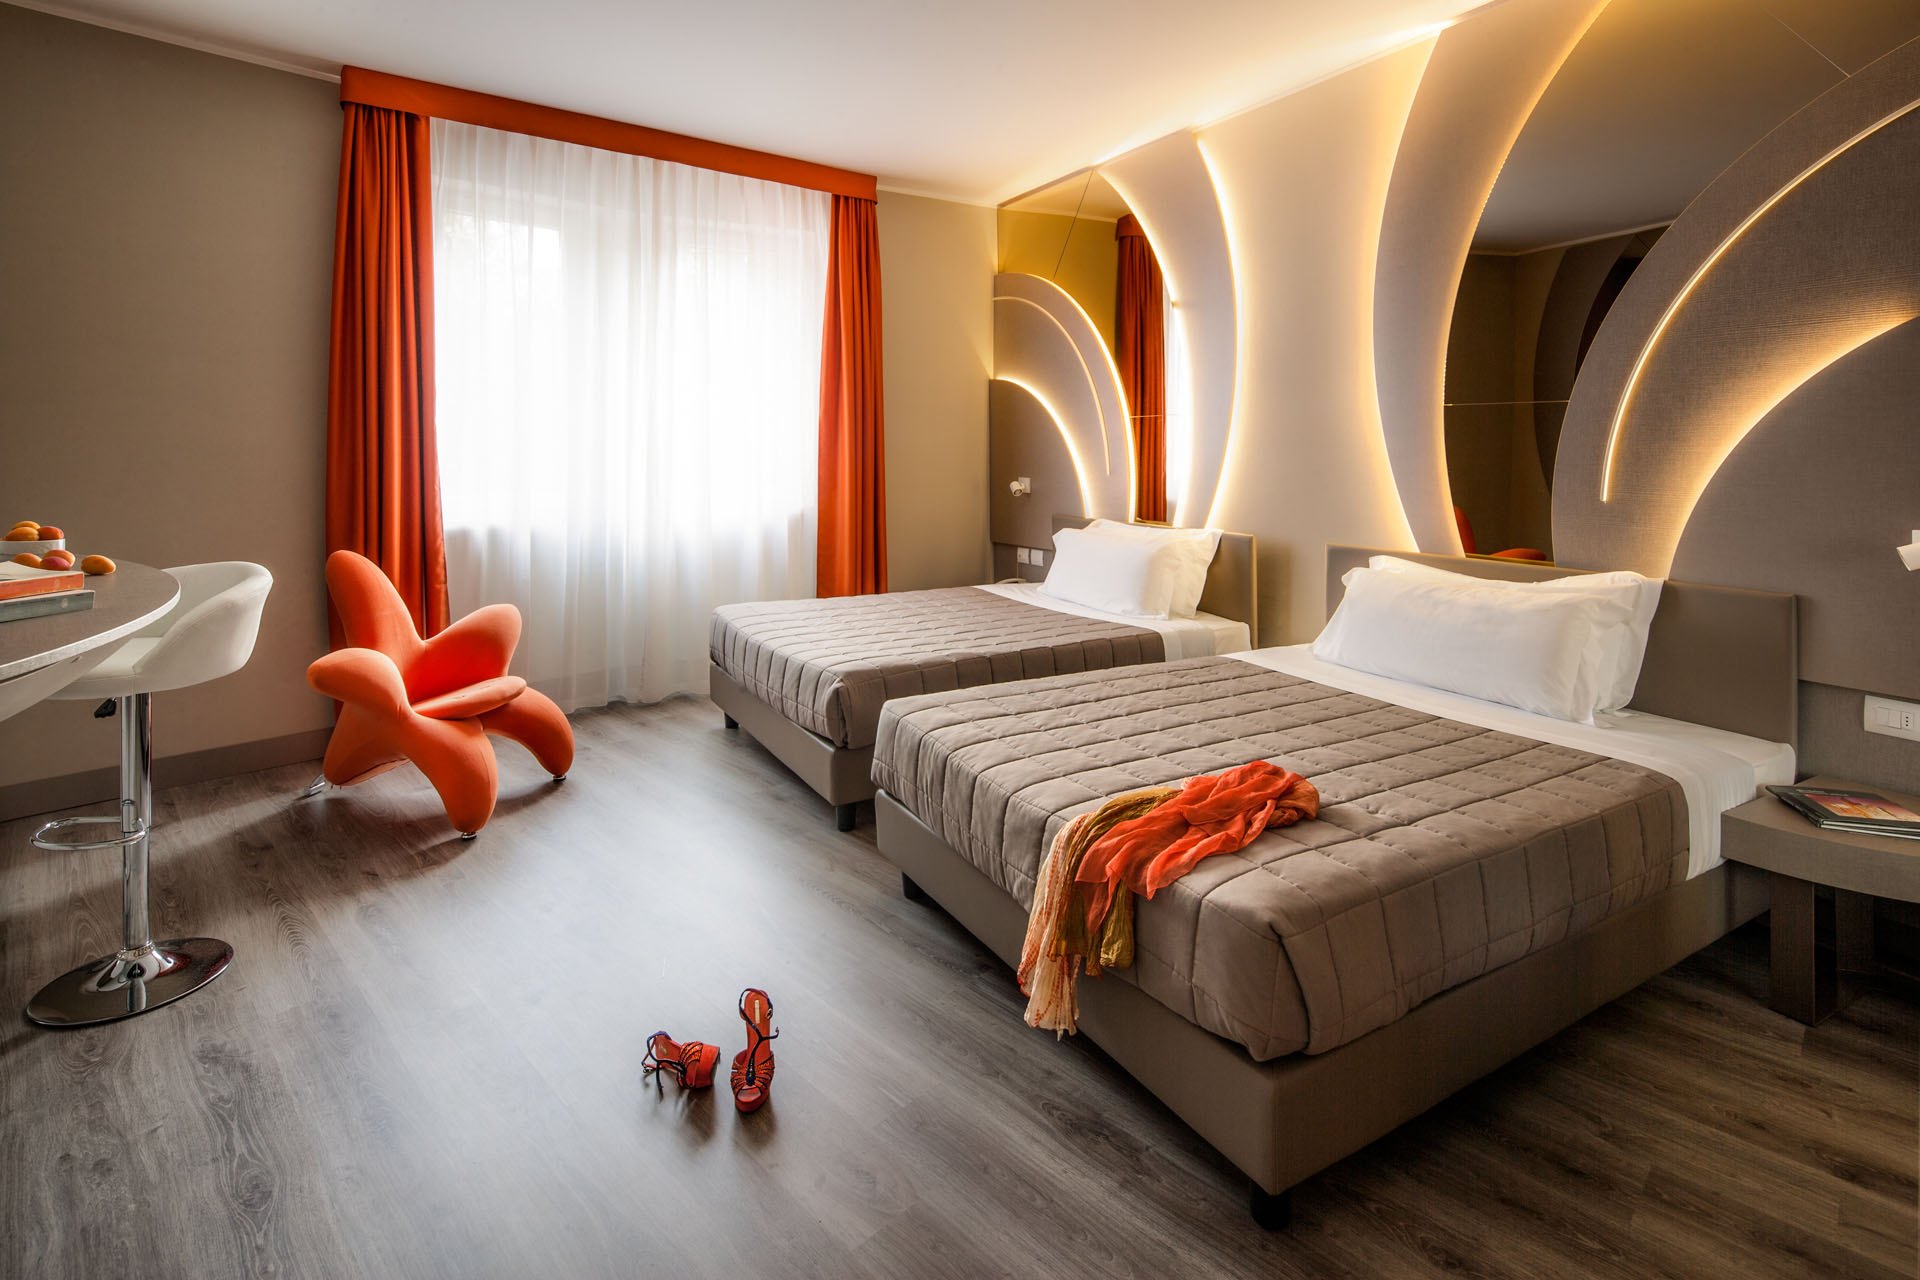 camera albergo doppia poltrona design hotel da vinci milano 4 stelle lavoro realizzato dal gruppo rodi 